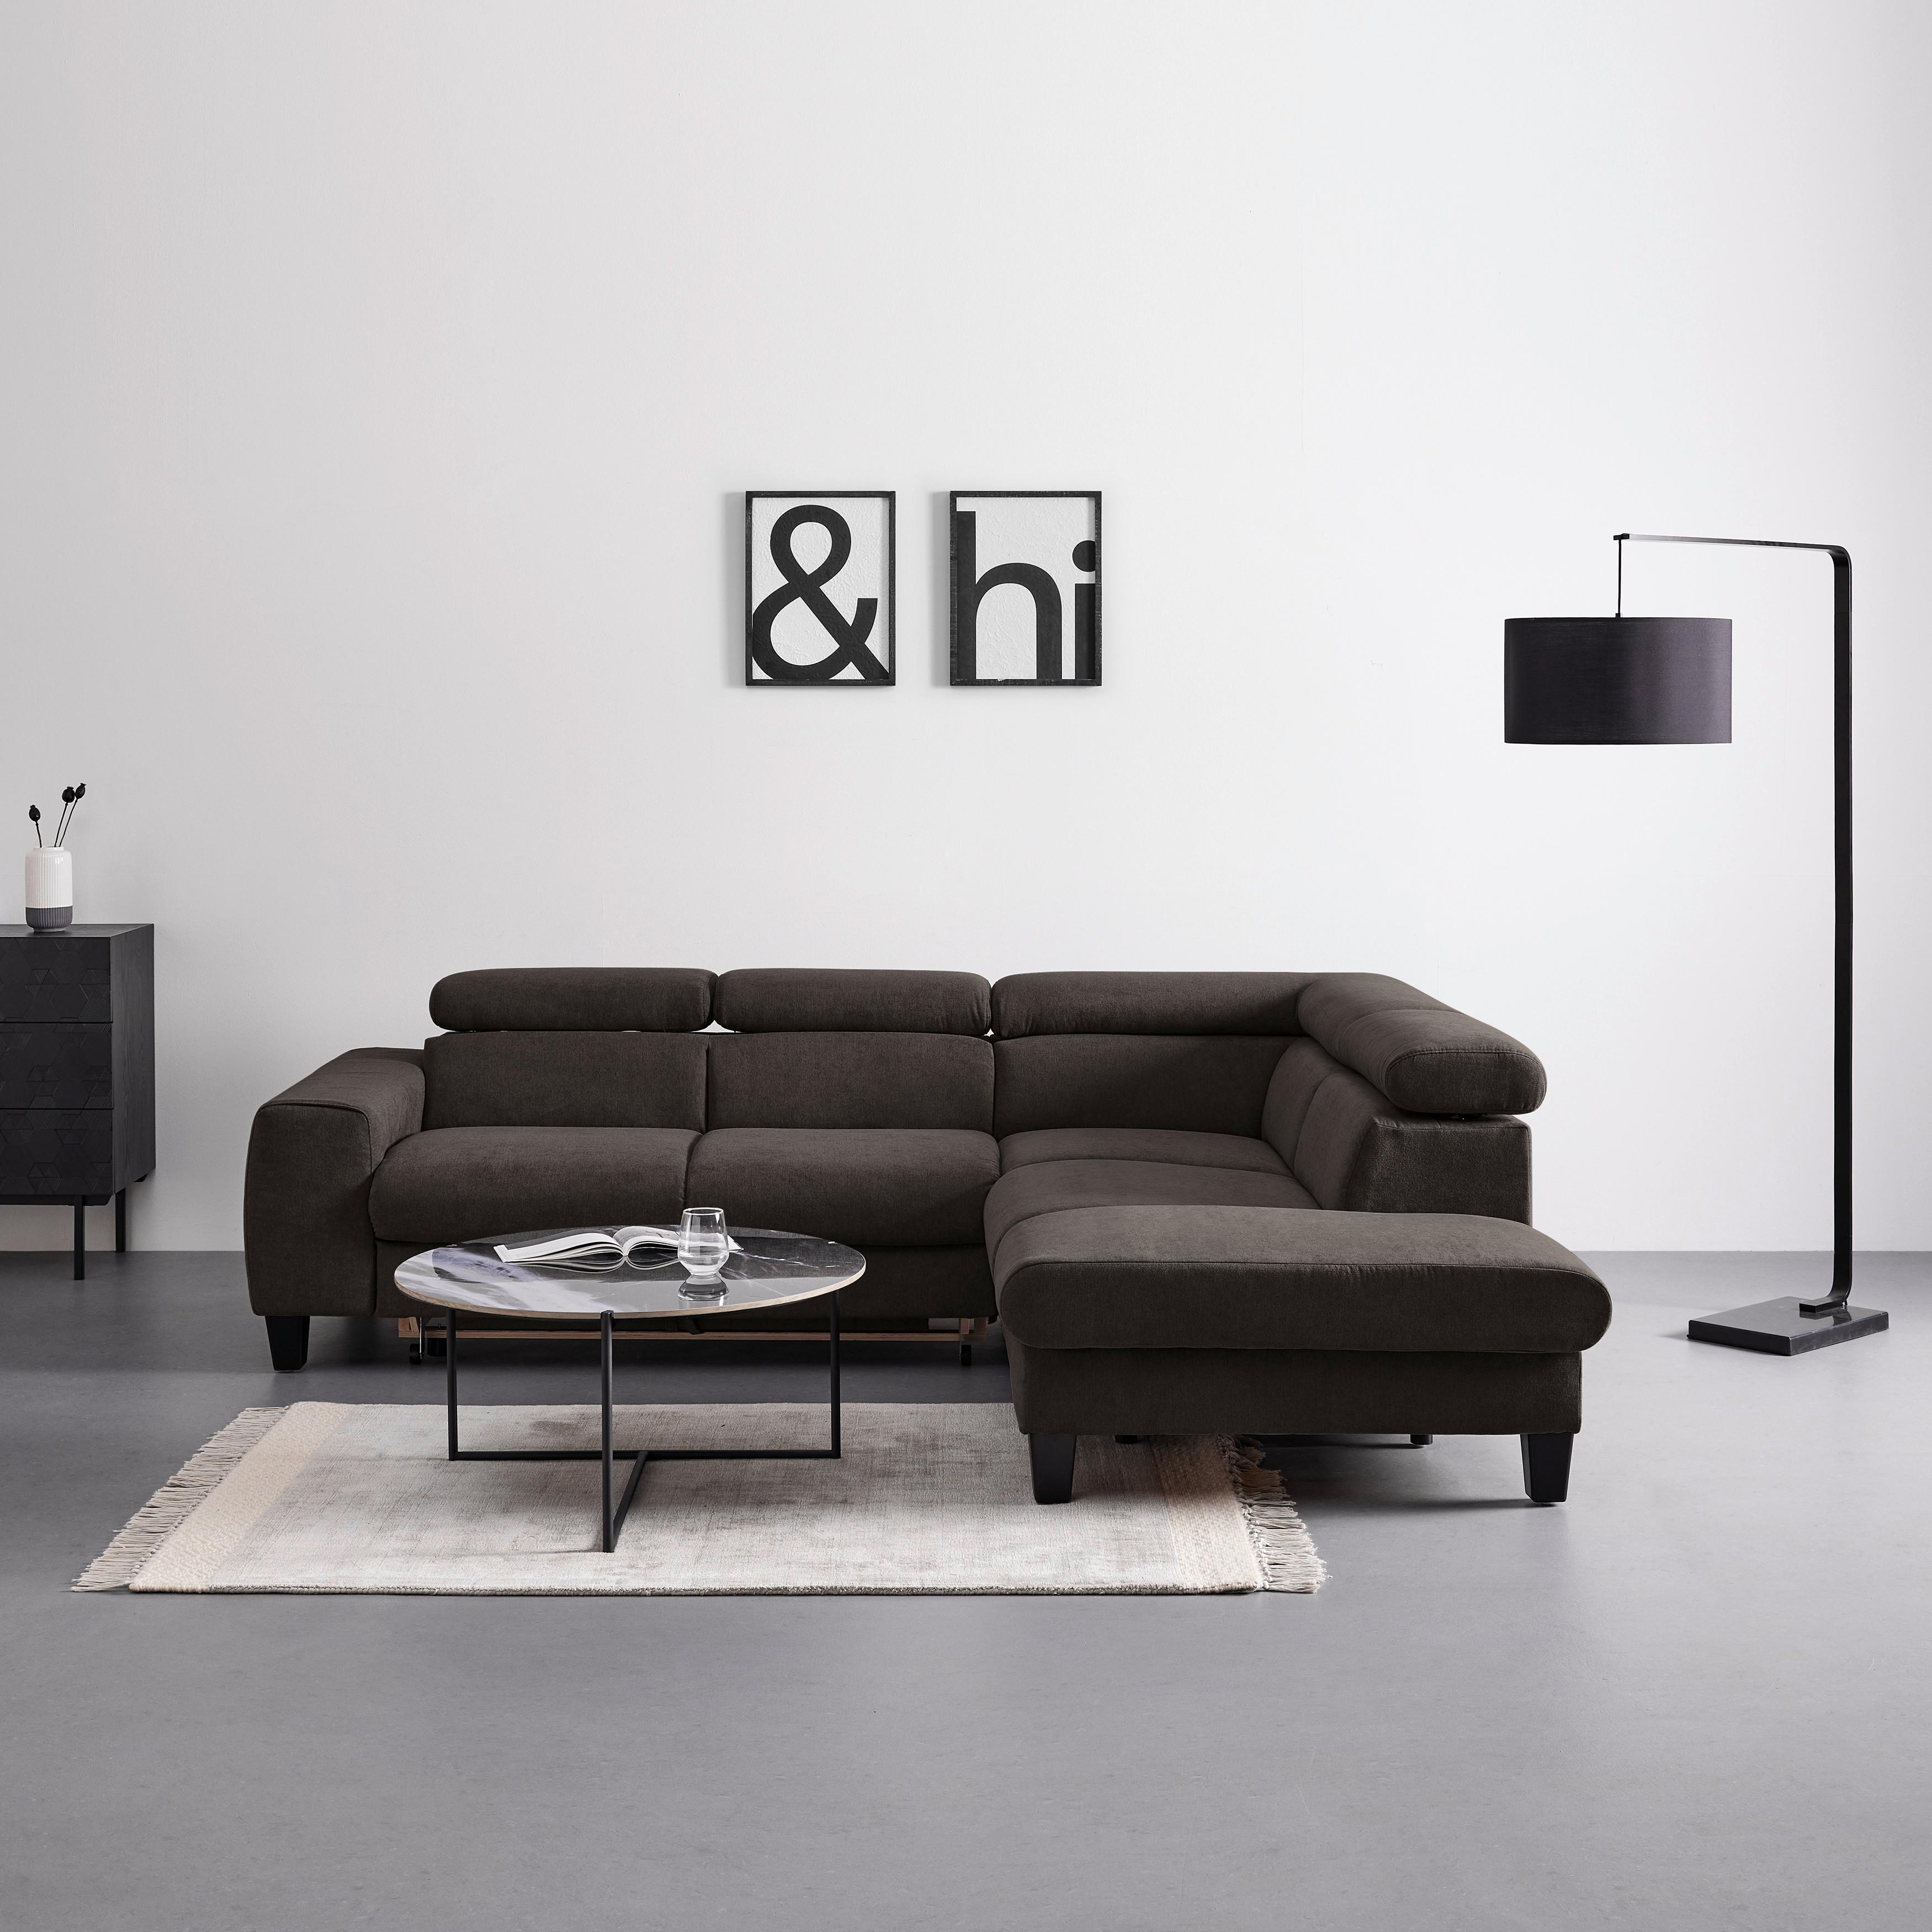 Sjedeća Garnitura Malibu - sivo-smeđa/wenge boje, Modern, tekstil/drvo (249/88/207cm) - Bessagi Home